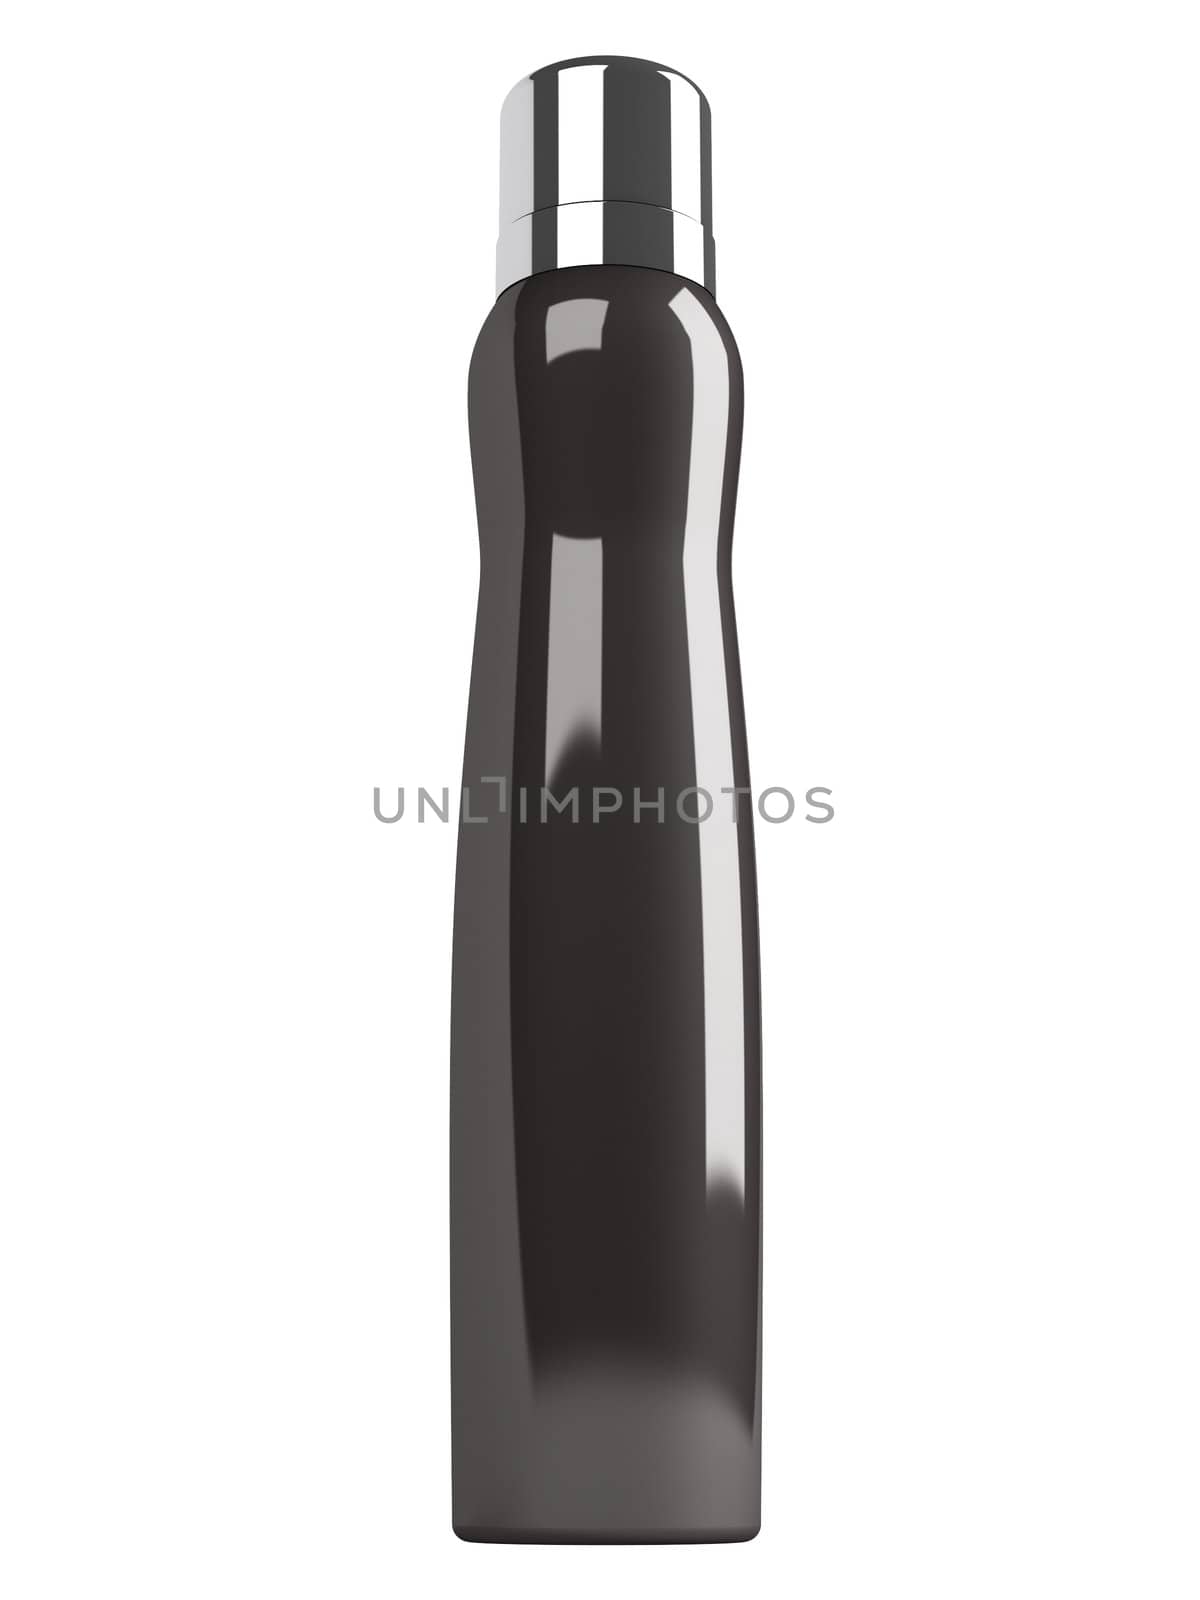 Black bottle  isolated on white background